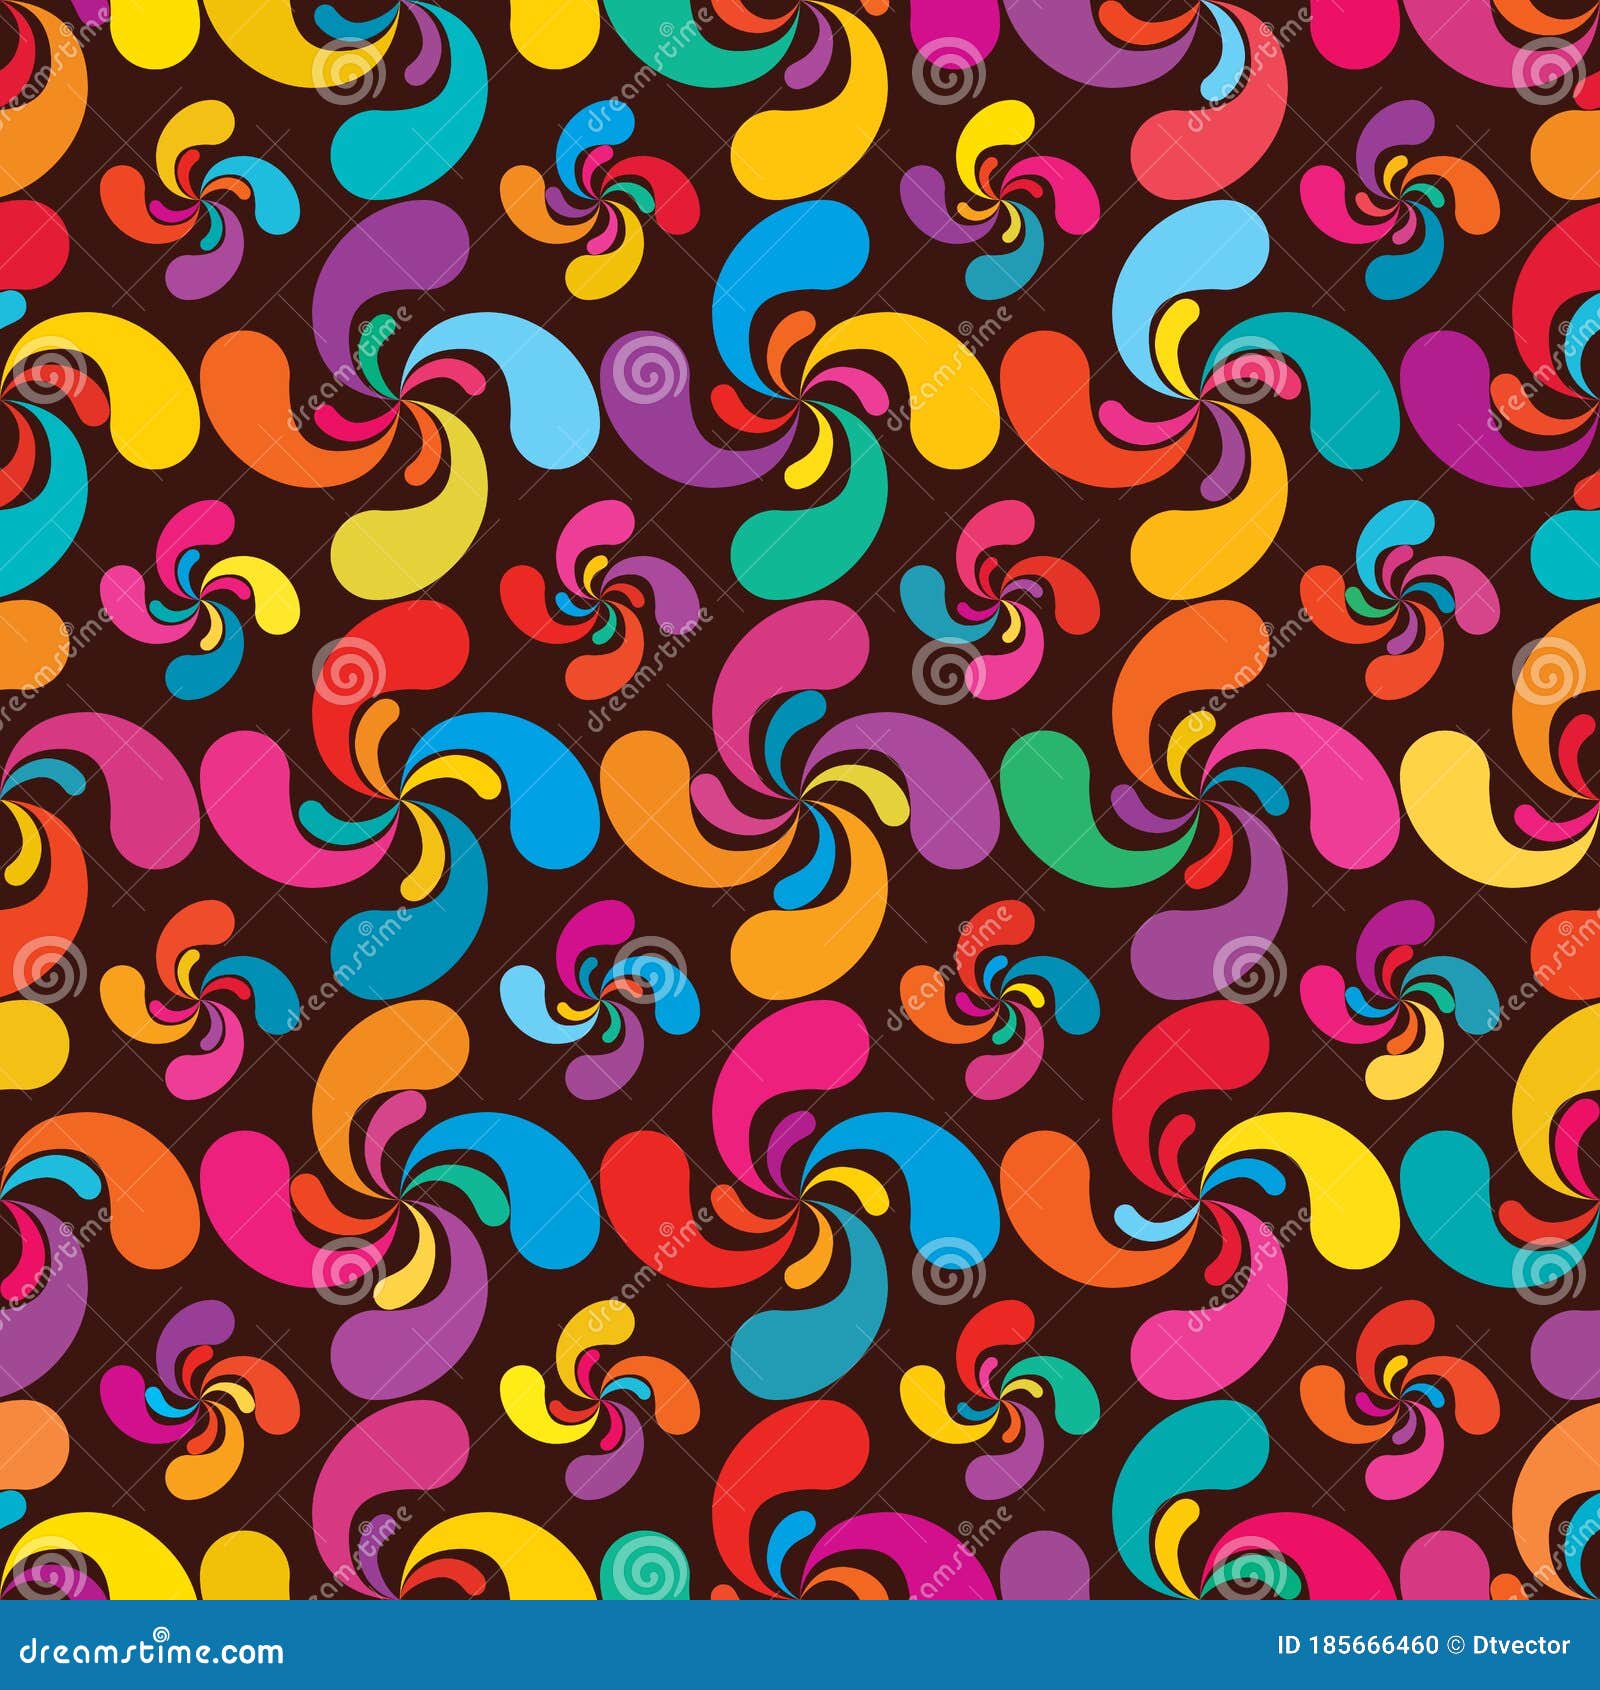 lauburu add 4 colorful seamless pattern